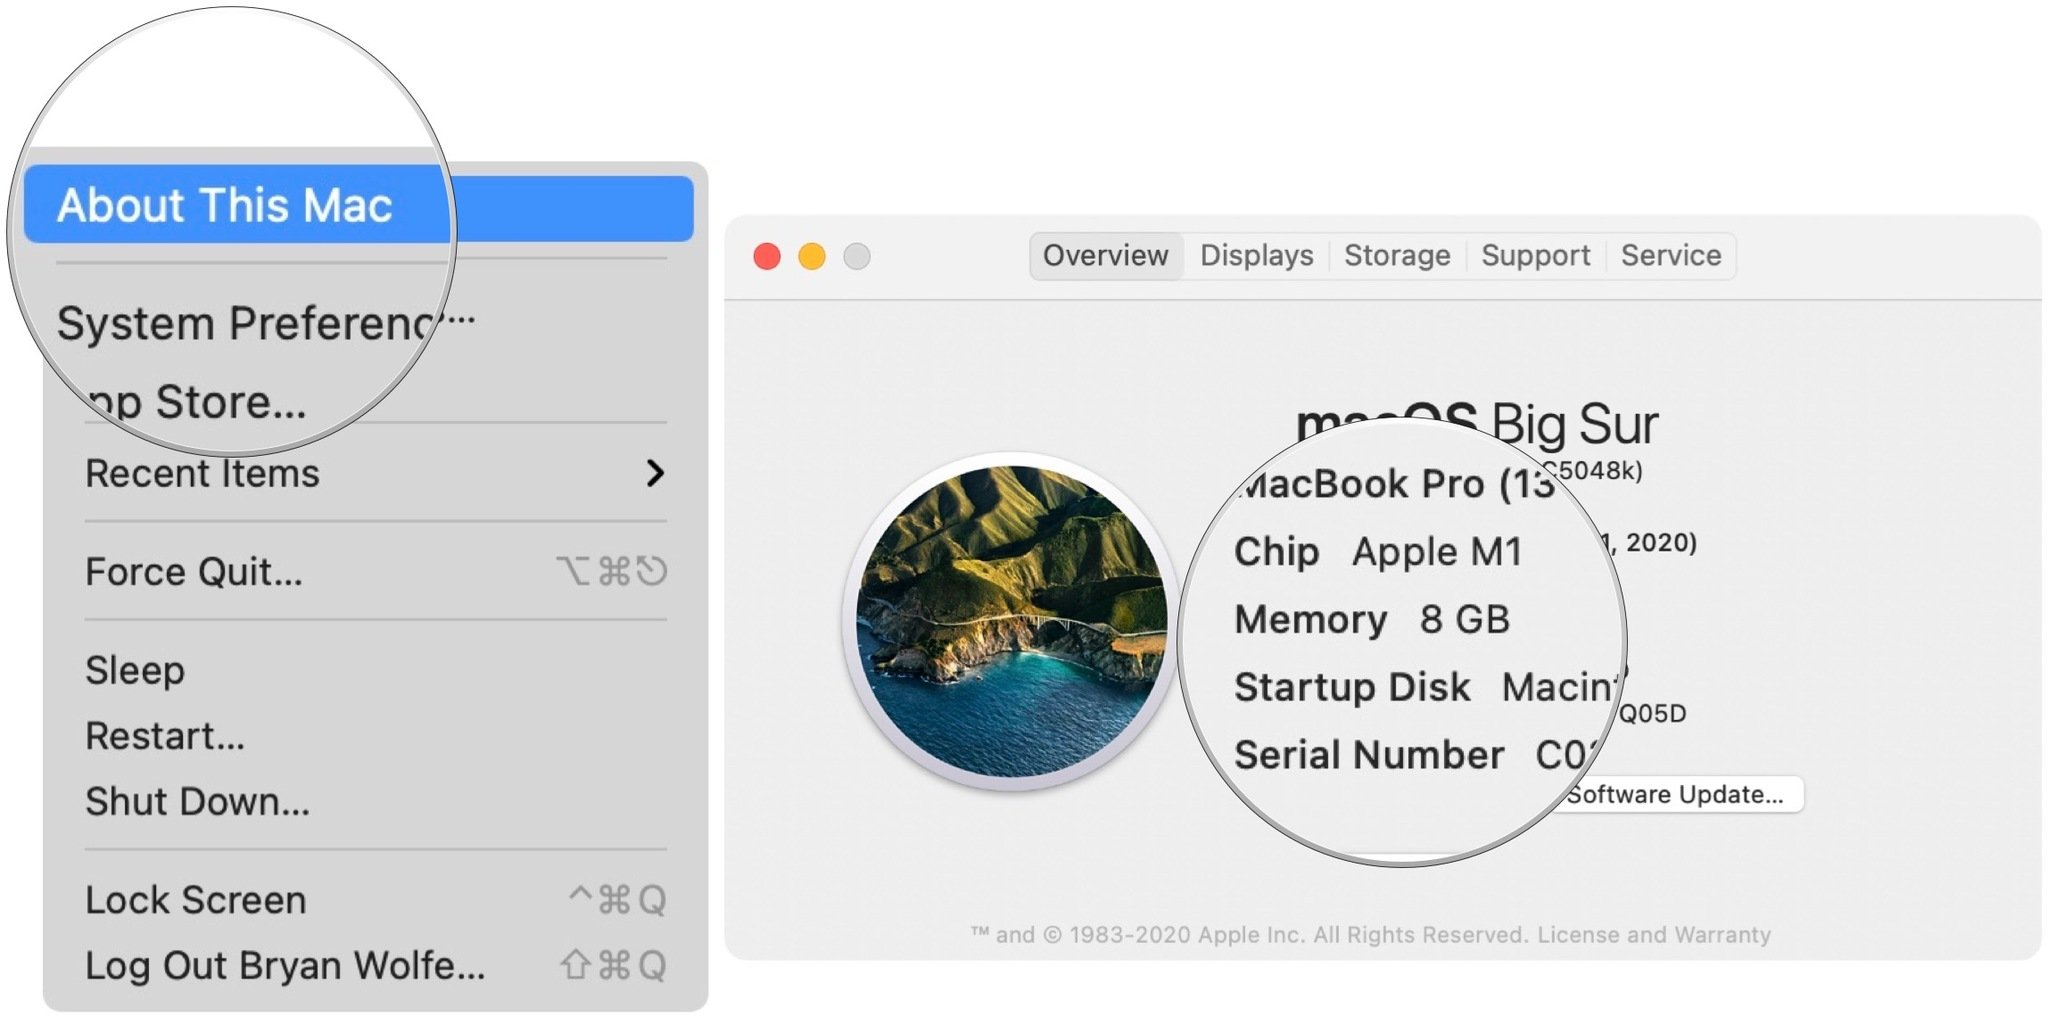 Чтобы подтвердить версию своего Mac, щелкните значок Apple в левом верхнем углу и выберите в меню «Об этом Mac». Подтвердите версию чипа, на которой должно быть написано Apple M1.